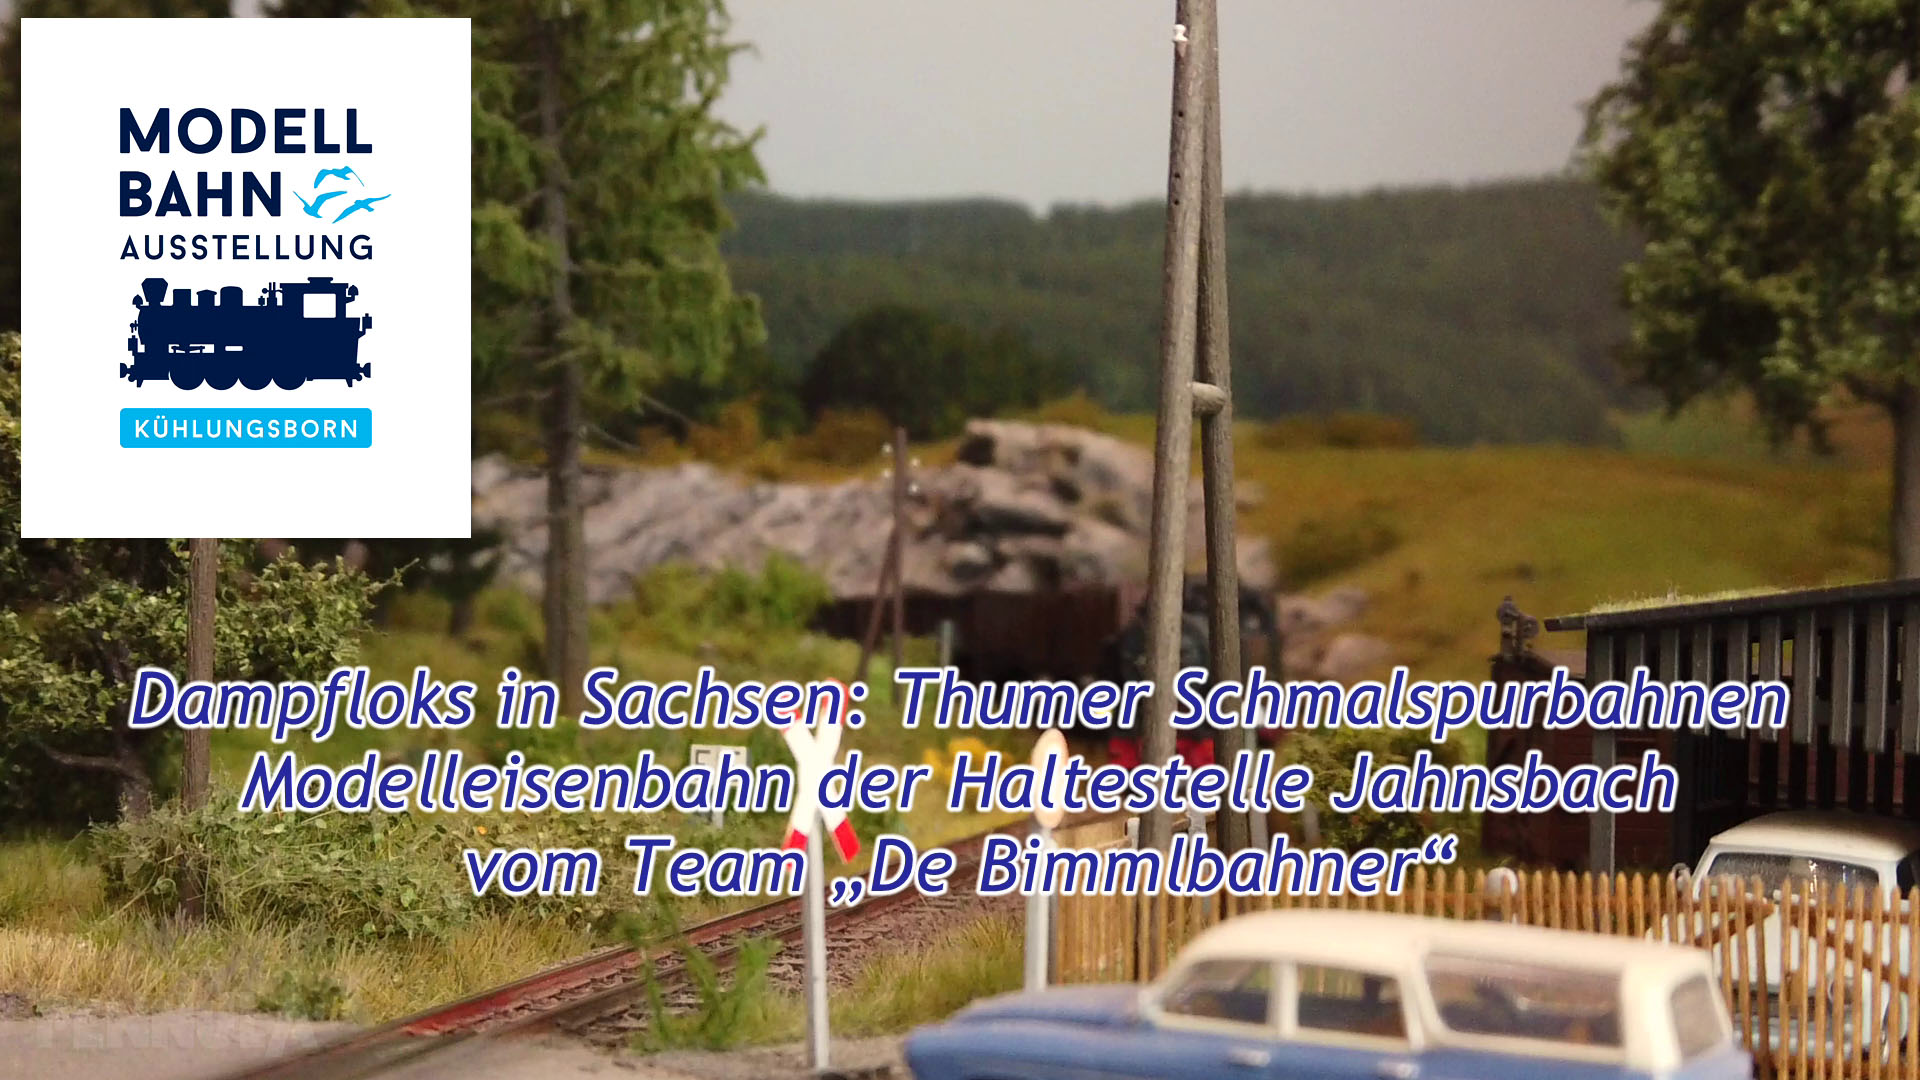 Dampfloks in Sachsen: Thumer Schmalspurbahnen - Modellbahn der Haltestelle Jahnsbach vom Team „De Bimmlbahner“